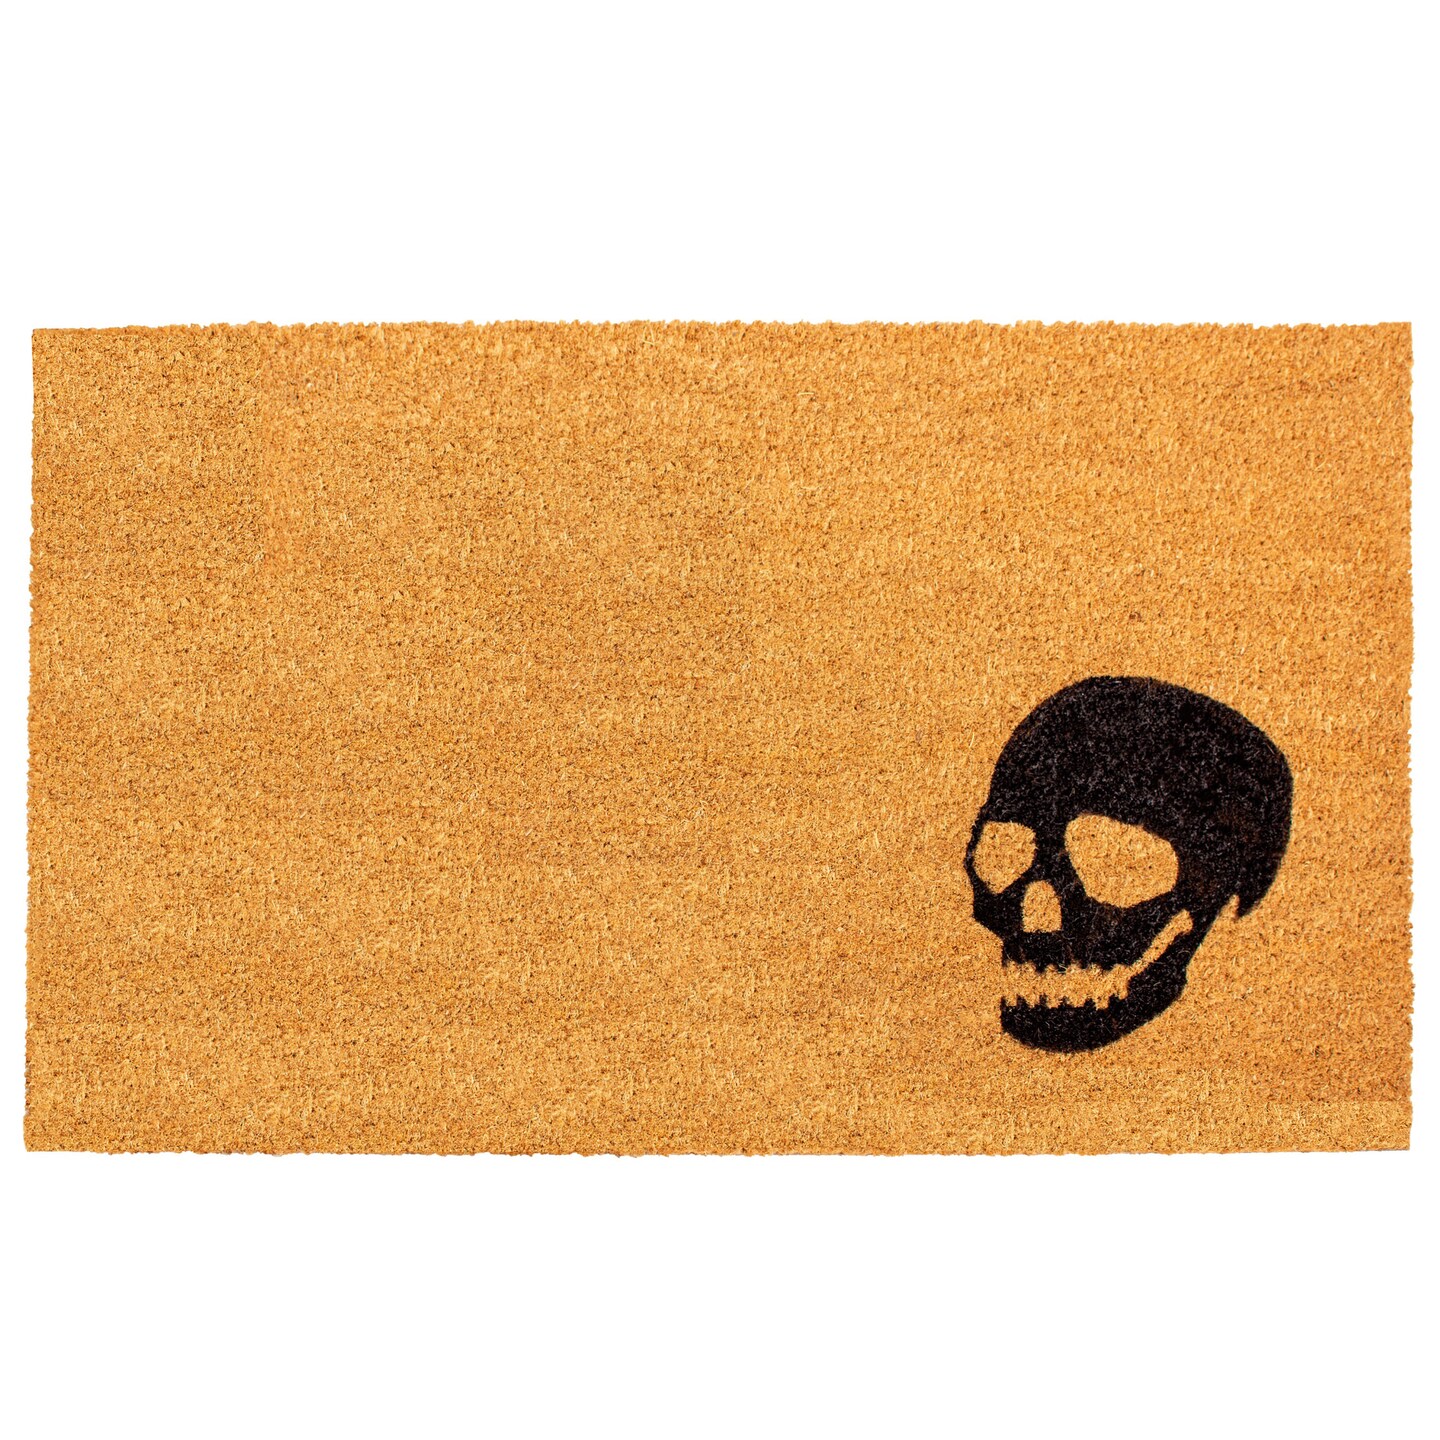 Black Skull Doormat